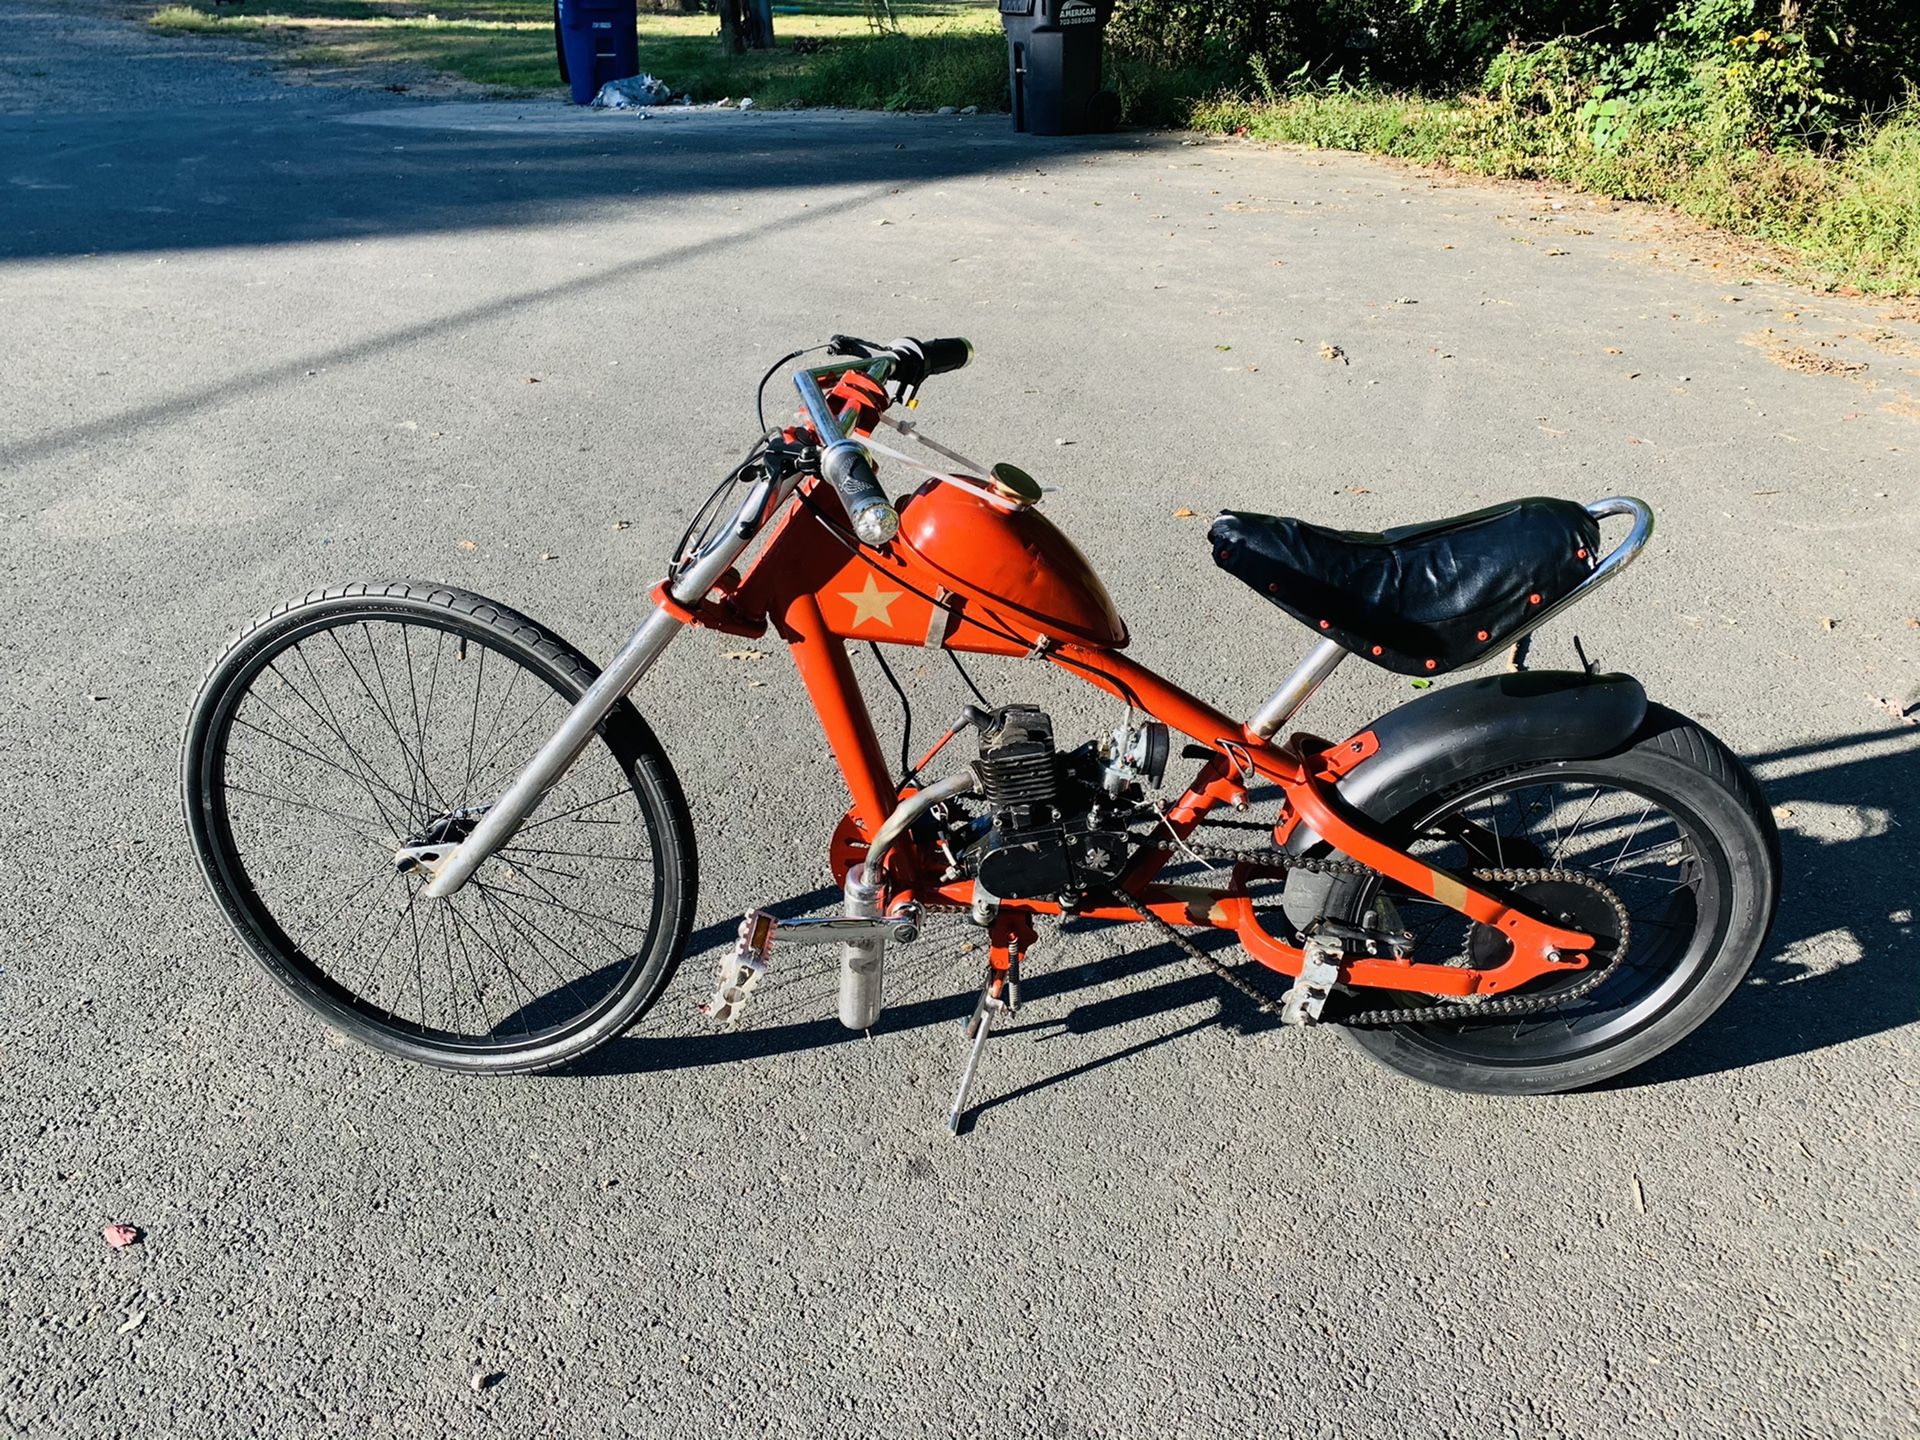 Motorized chopper bike